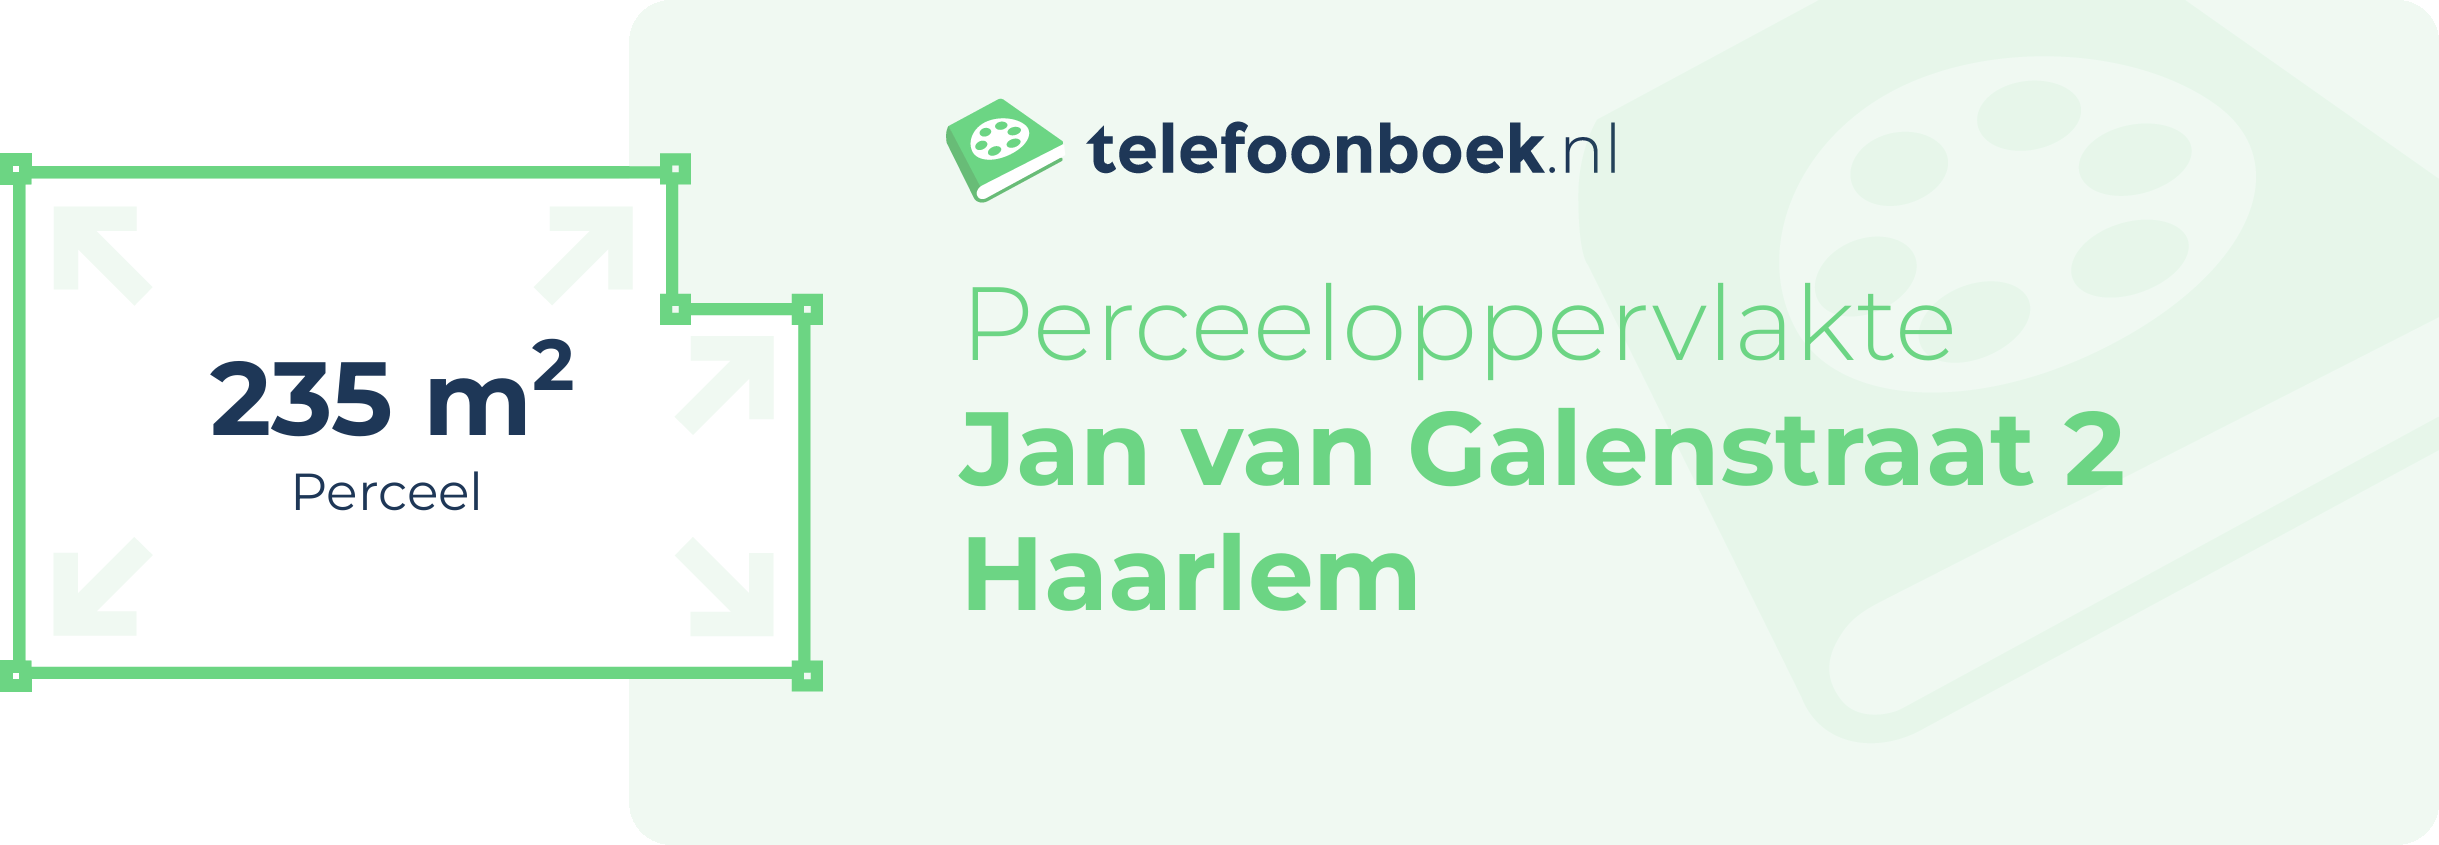 Perceeloppervlakte Jan Van Galenstraat 2 Haarlem